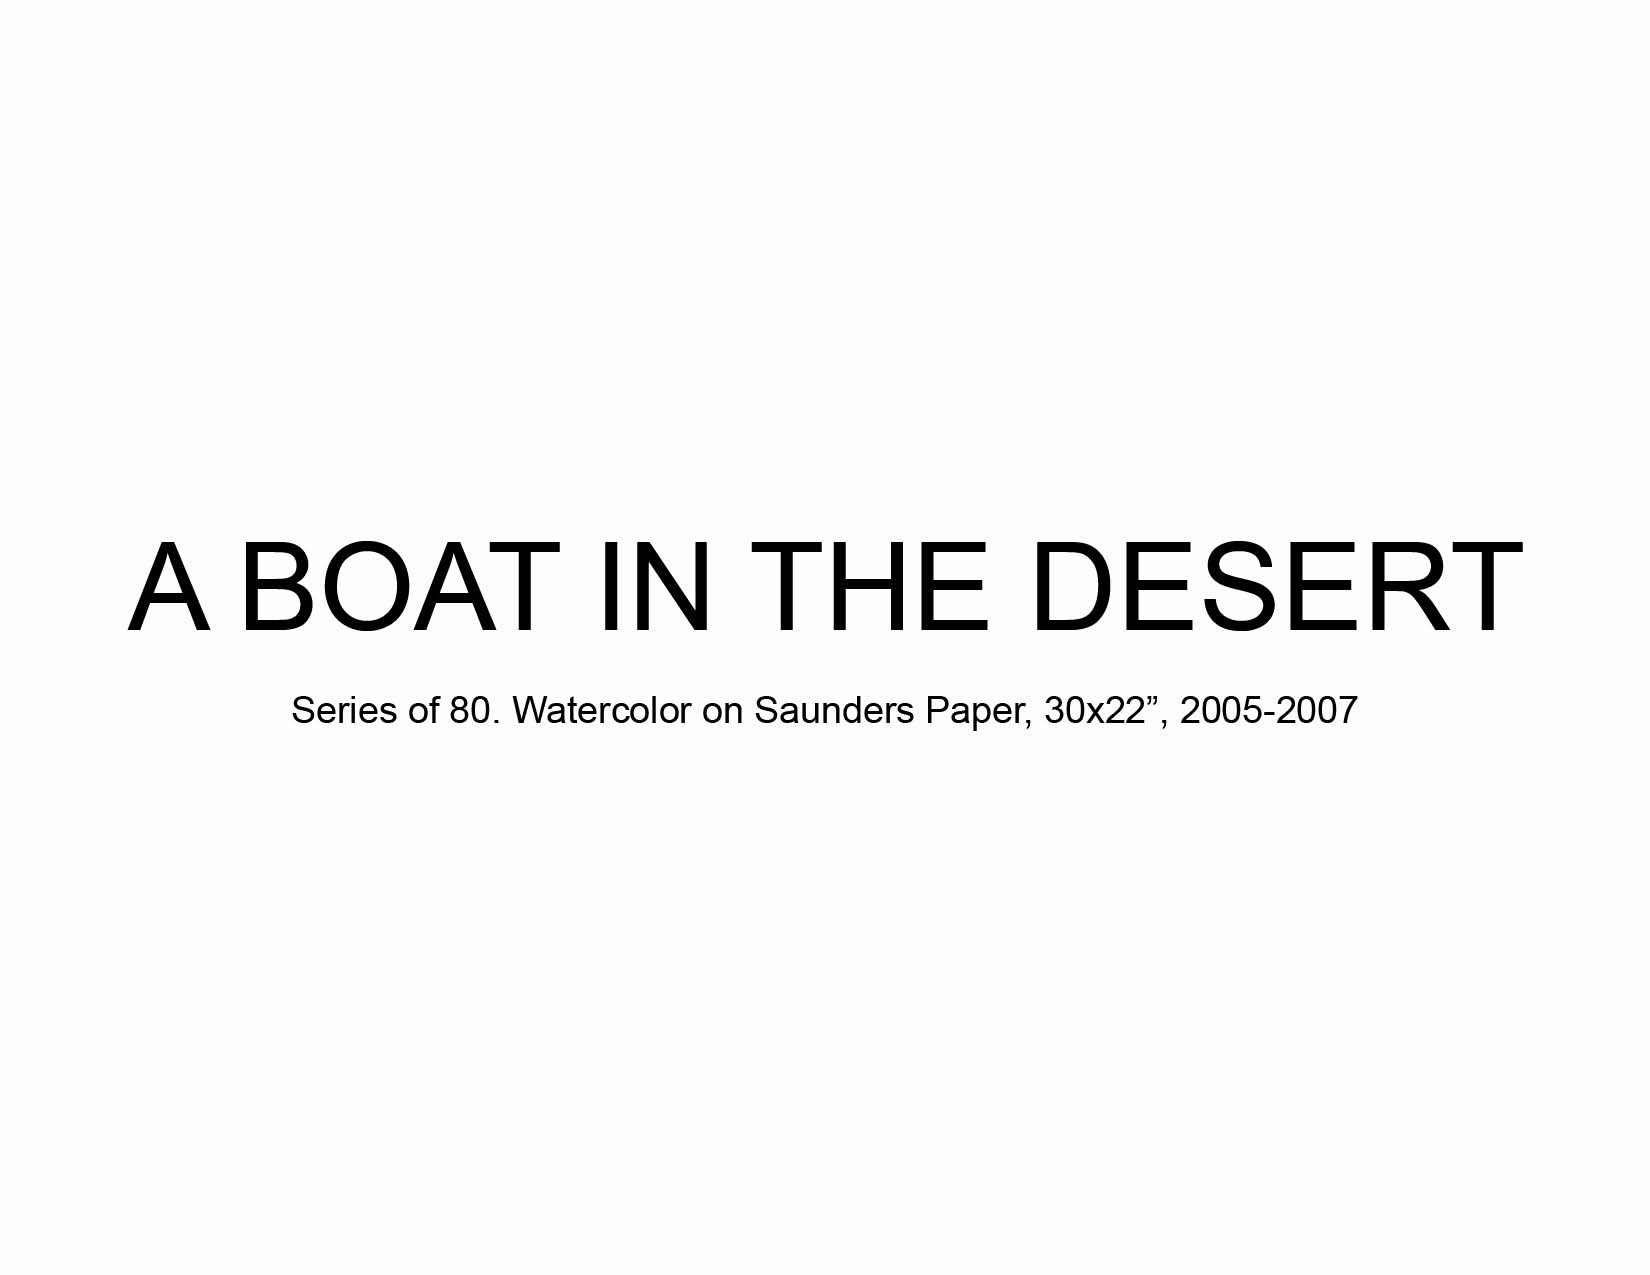 03 A Boat in the Desert.jpg